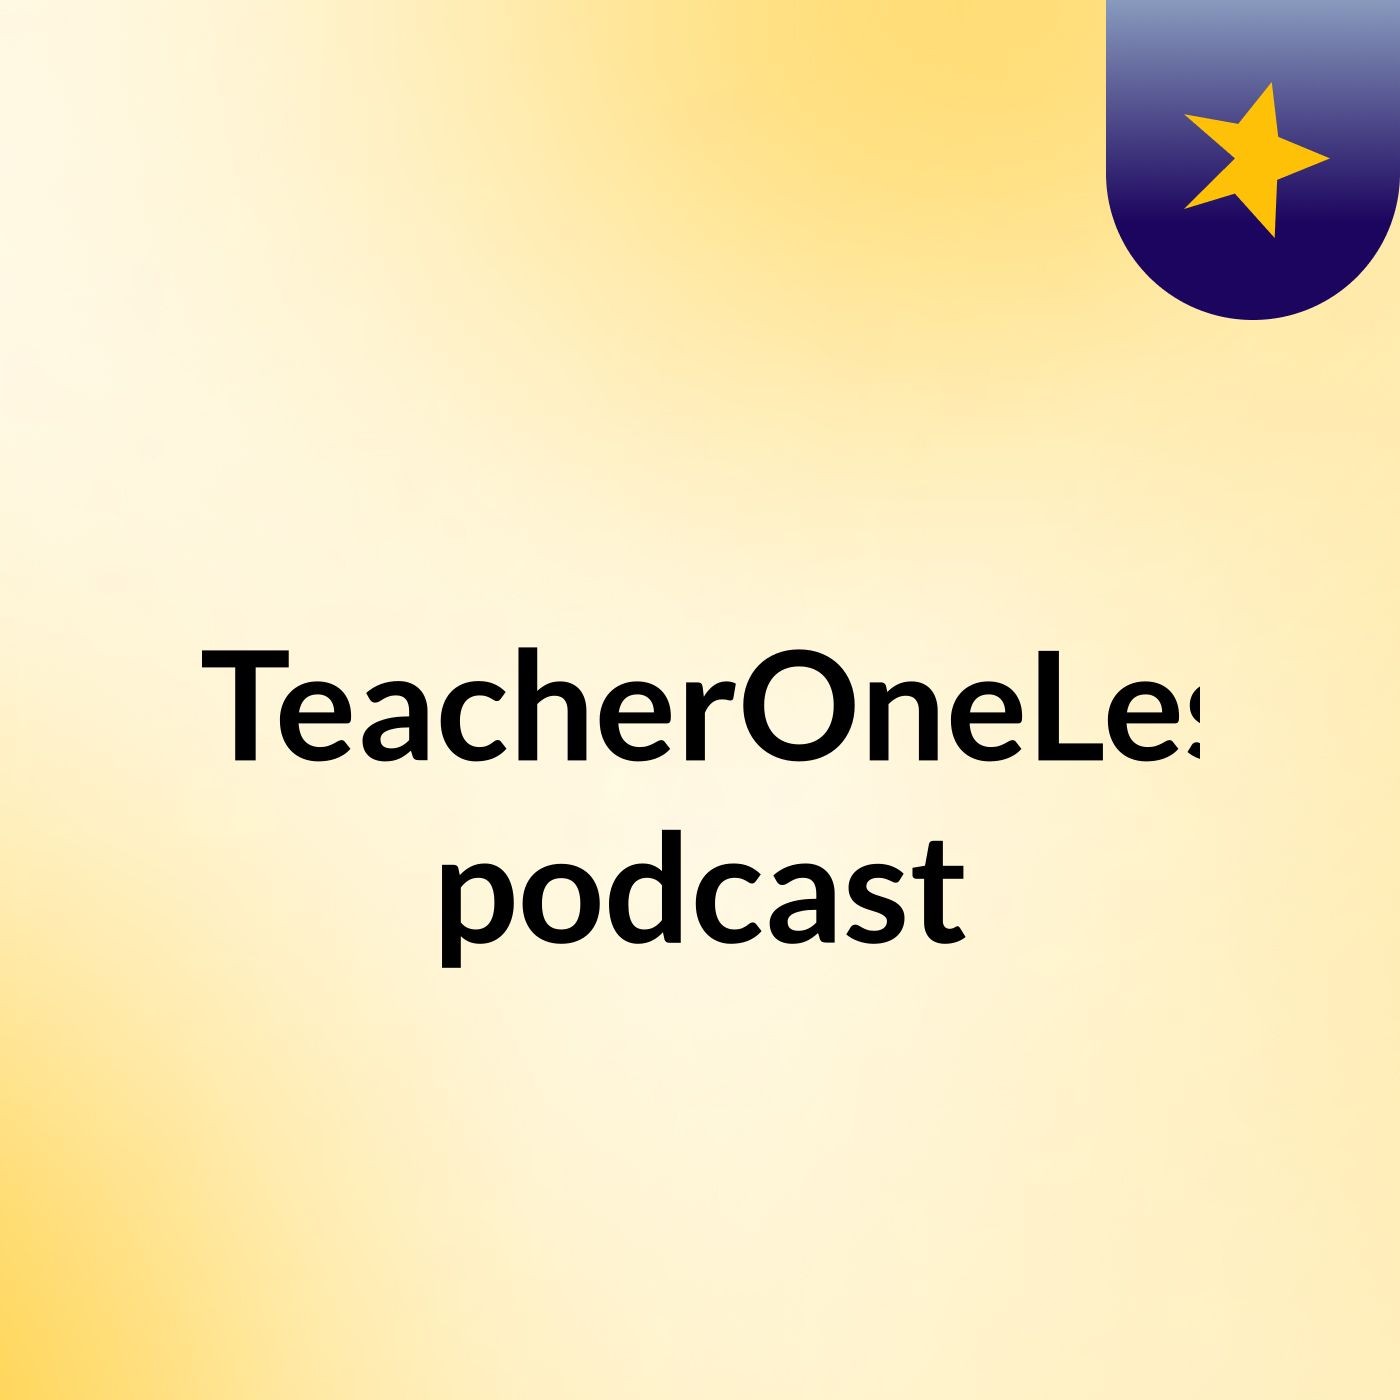 #OneTeacherOneLesson podcast